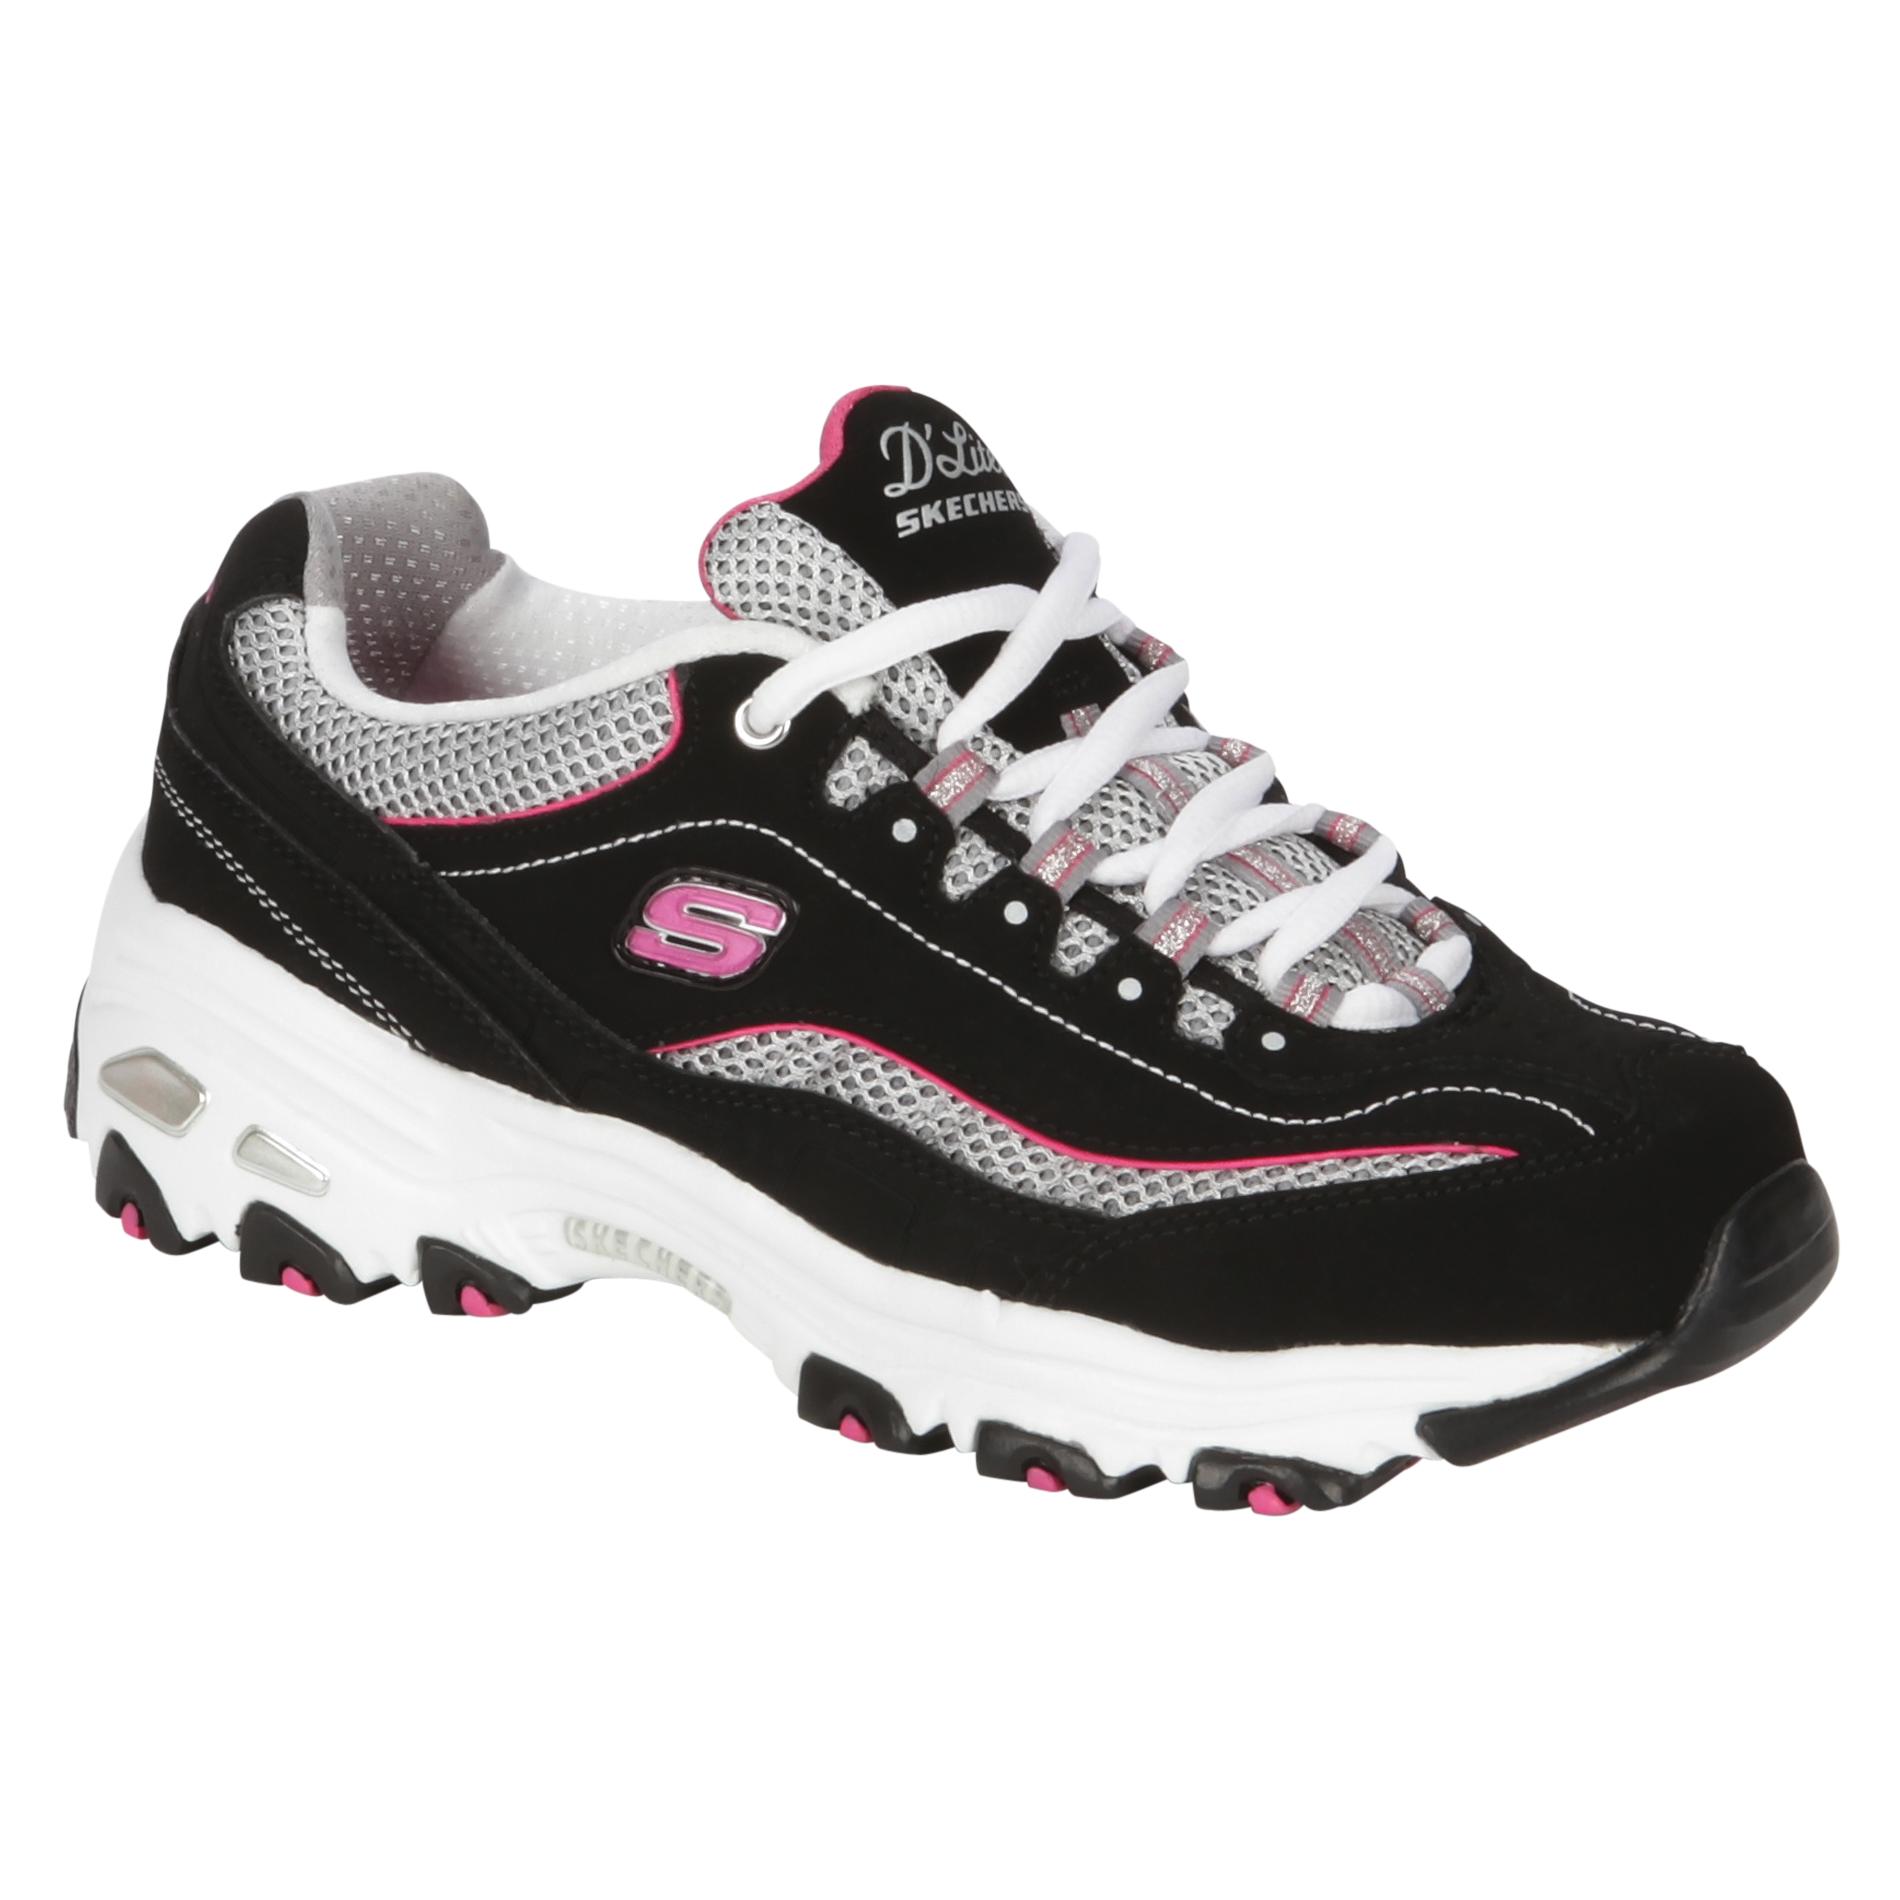 Skechers Women's D'Lites Centennial  Athletic Shoe Wide Width - Black/Pink